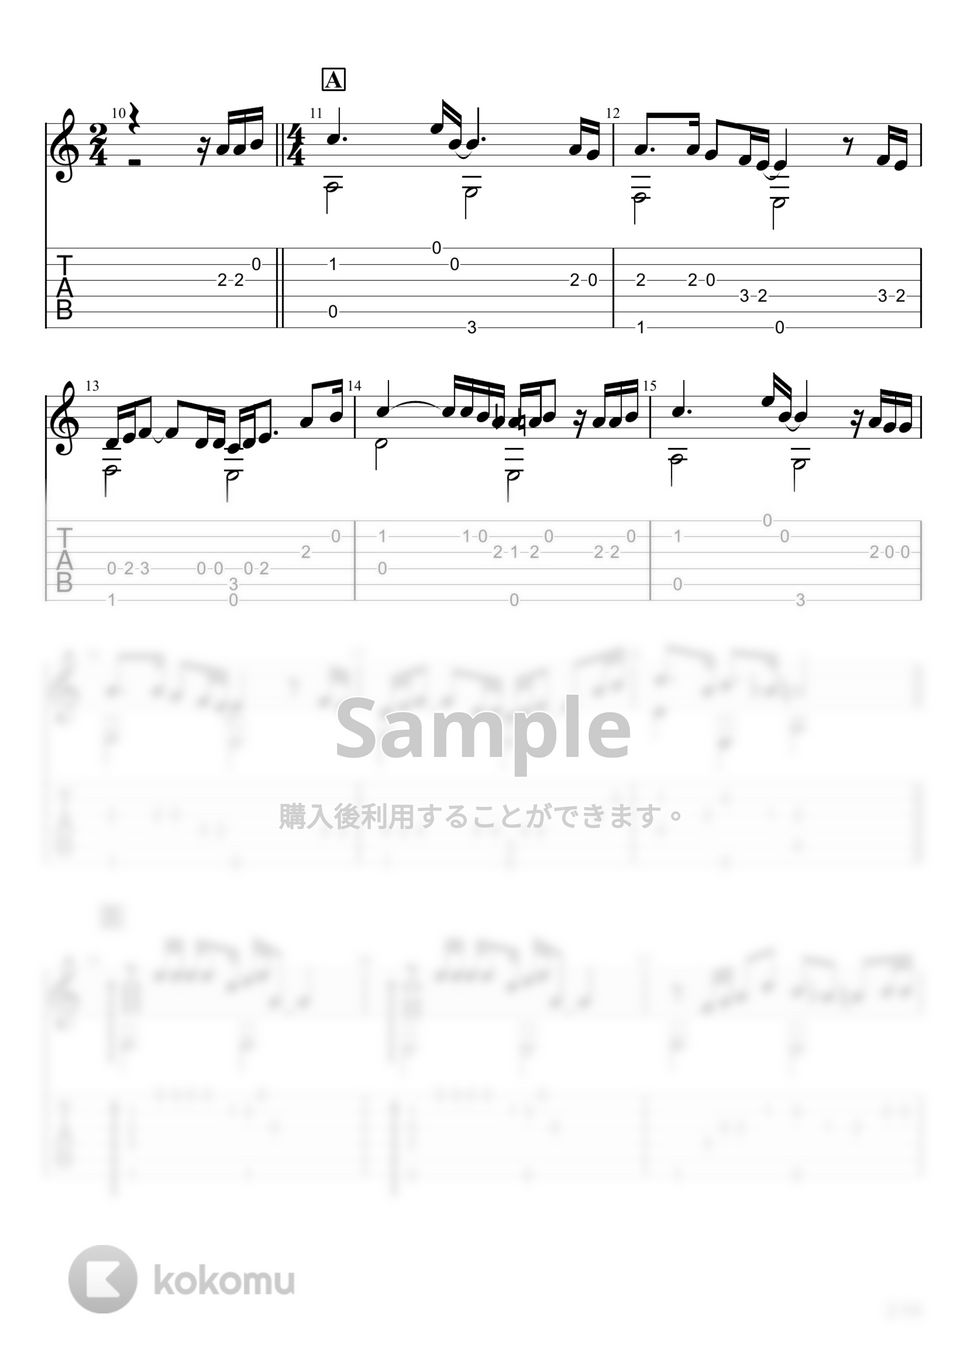 いきものがかり - YELL (ソロギター) by u3danchou